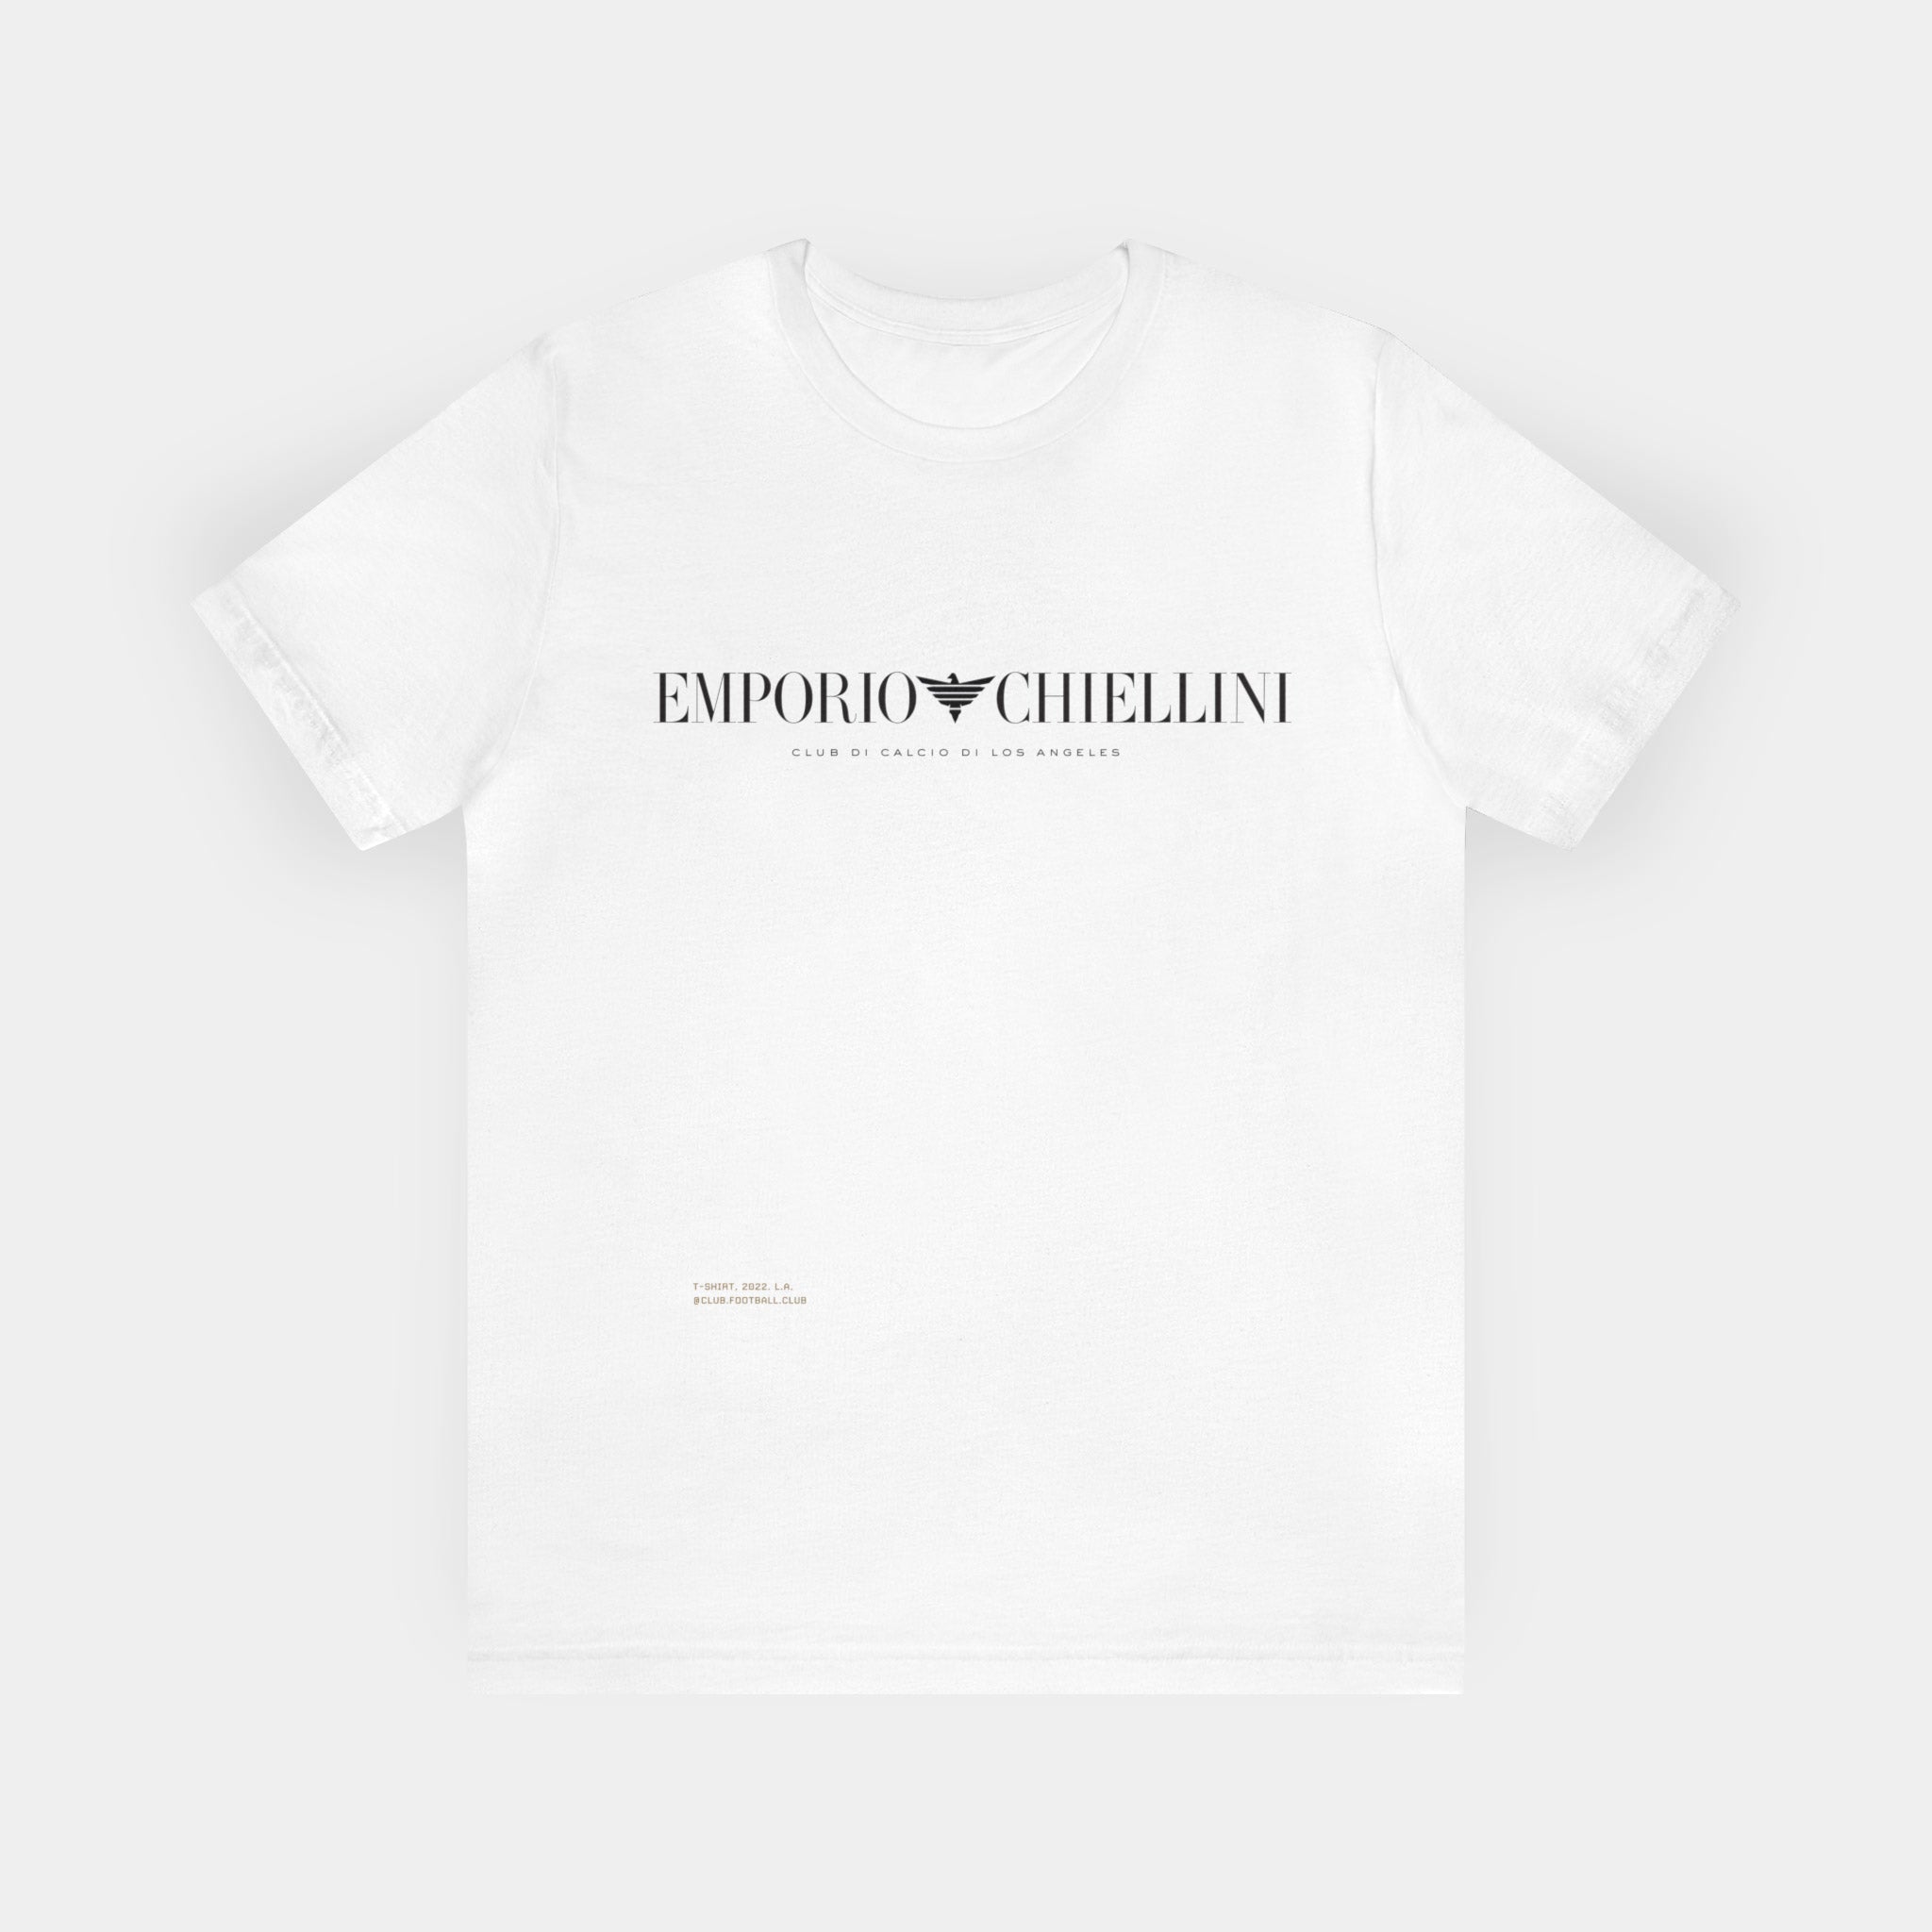 Emporio Chiellini (LAFC) T-shirt